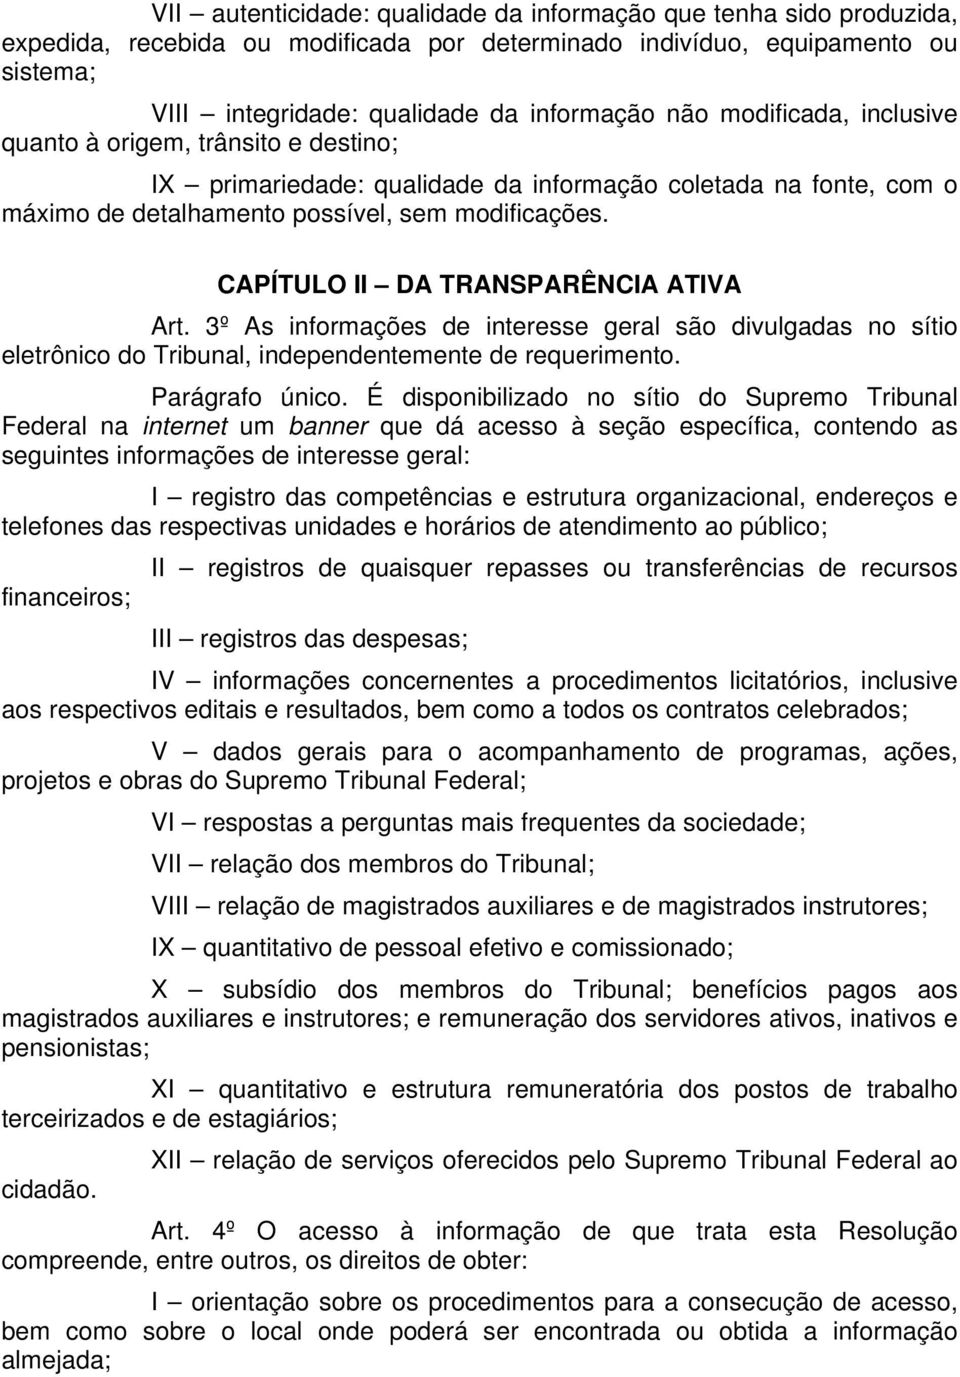 CAPÍTULO II DA TRANSPARÊNCIA ATIVA Art. 3º As informações de interesse geral são divulgadas no sítio eletrônico do Tribunal, independentemente de requerimento. Parágrafo único.